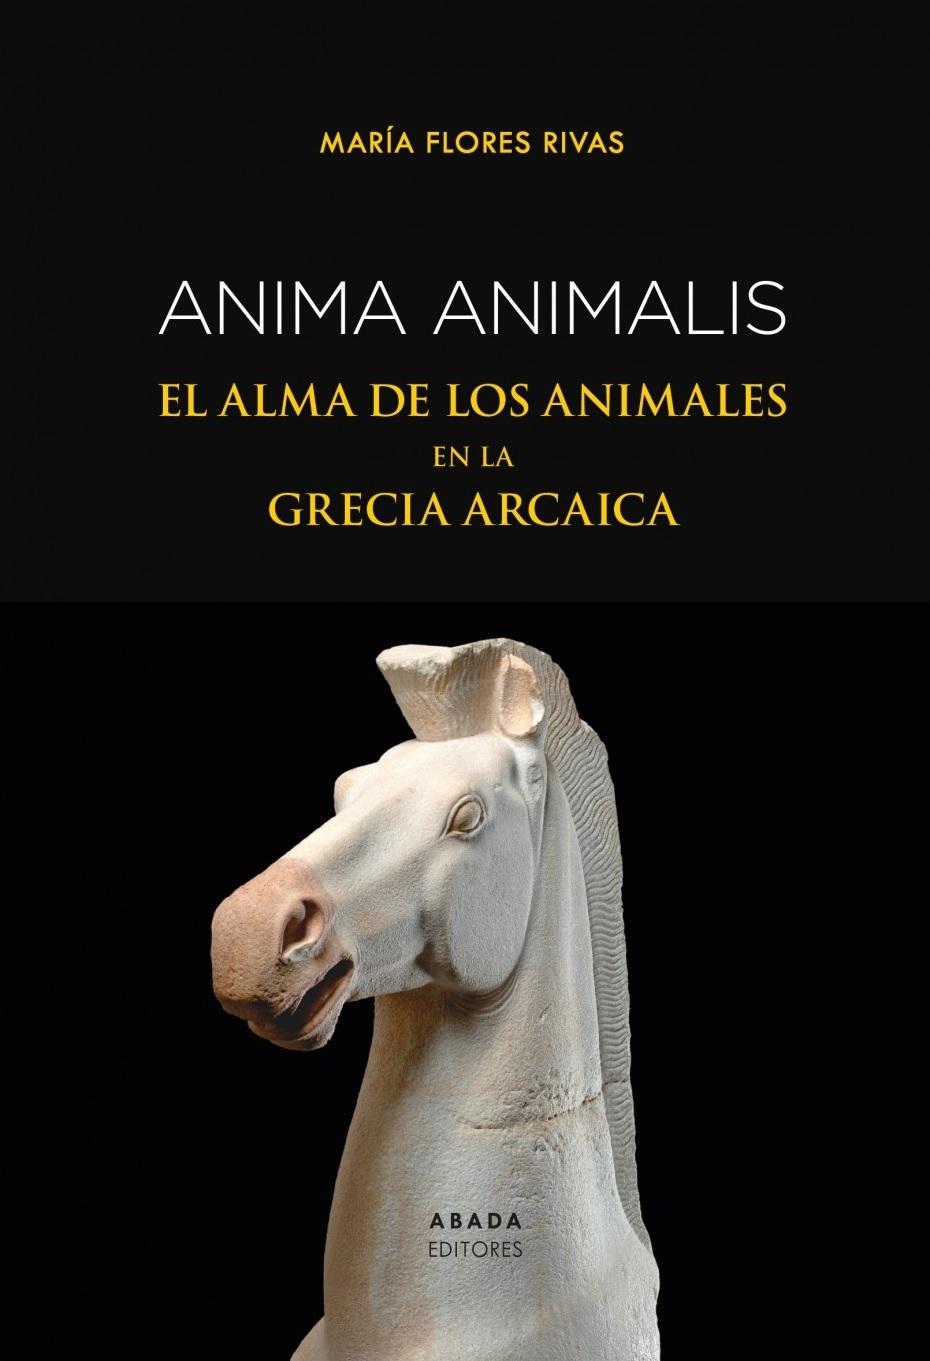 ANIMA ANIMALIS "EL ALMA DE LOS ANIMALES EN LA GRECIA ARCAICA"